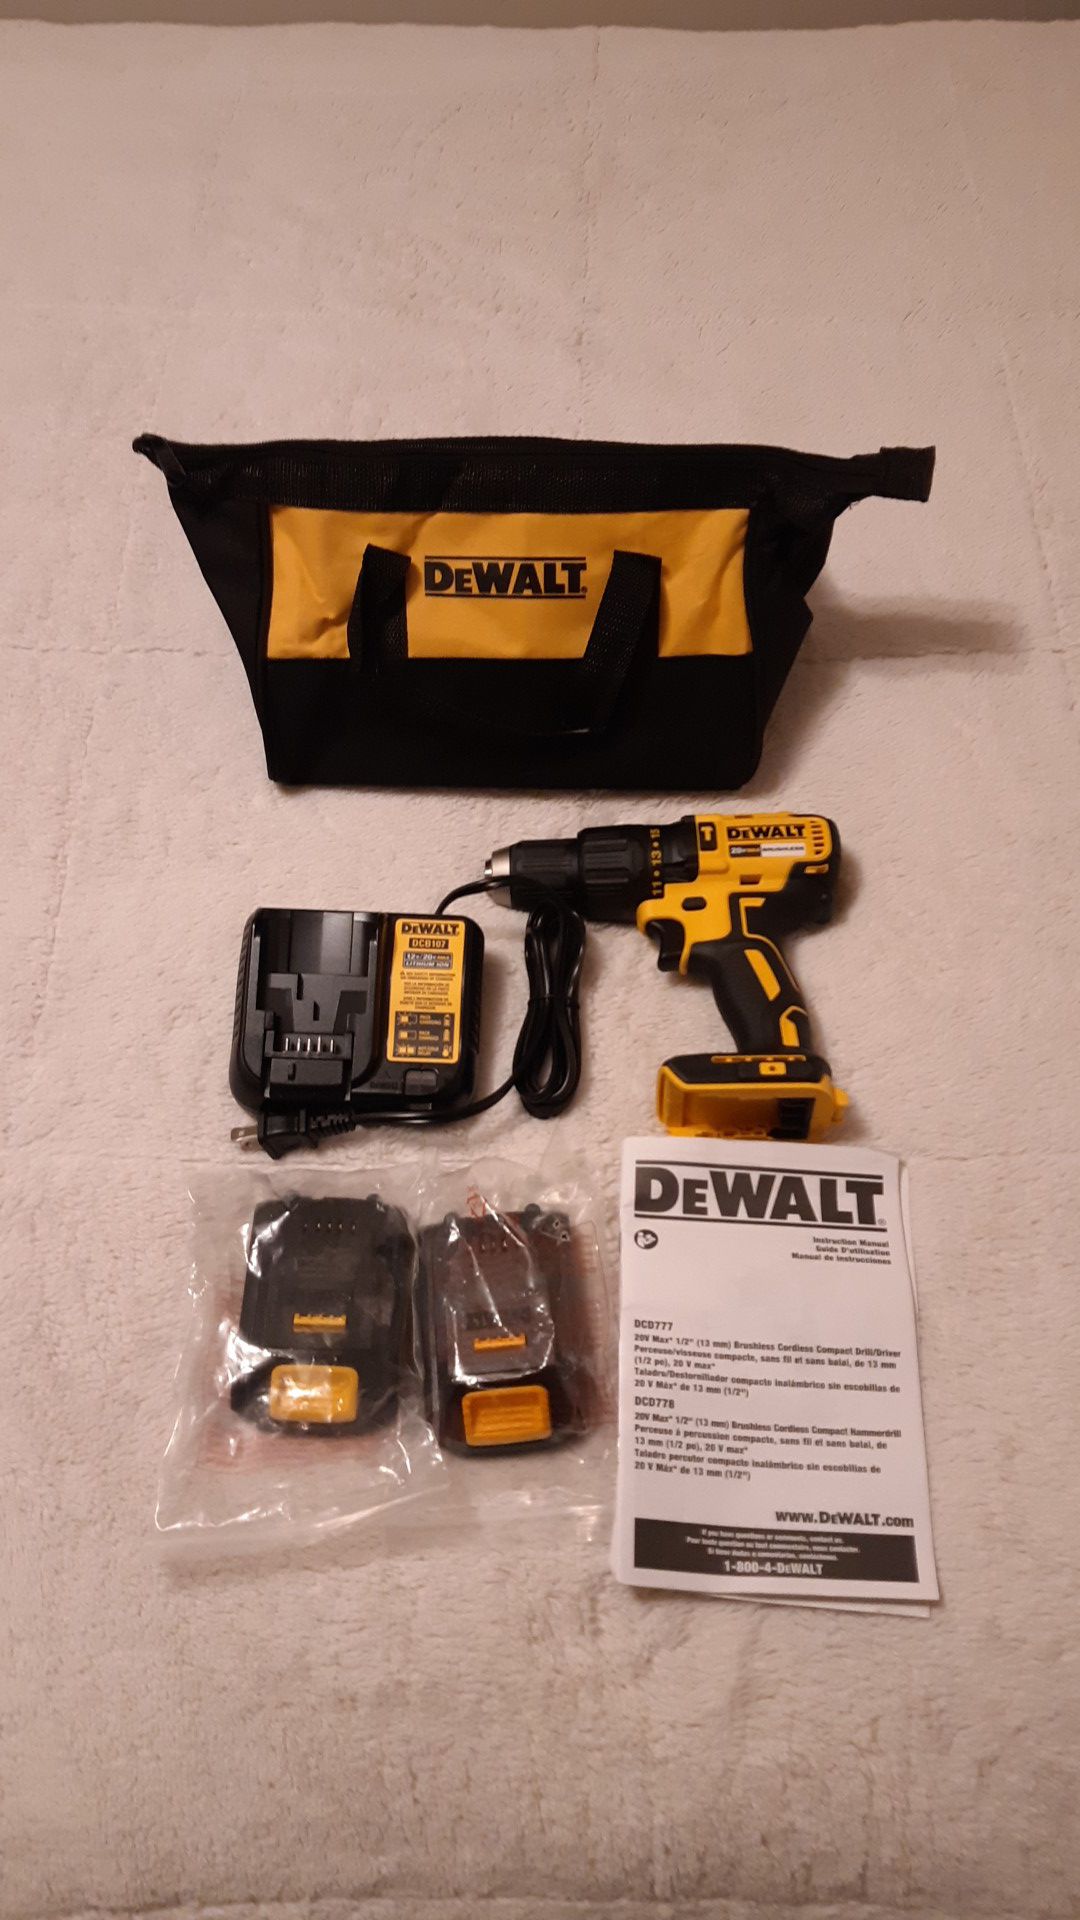 Dewalt 20 volt drill (new)